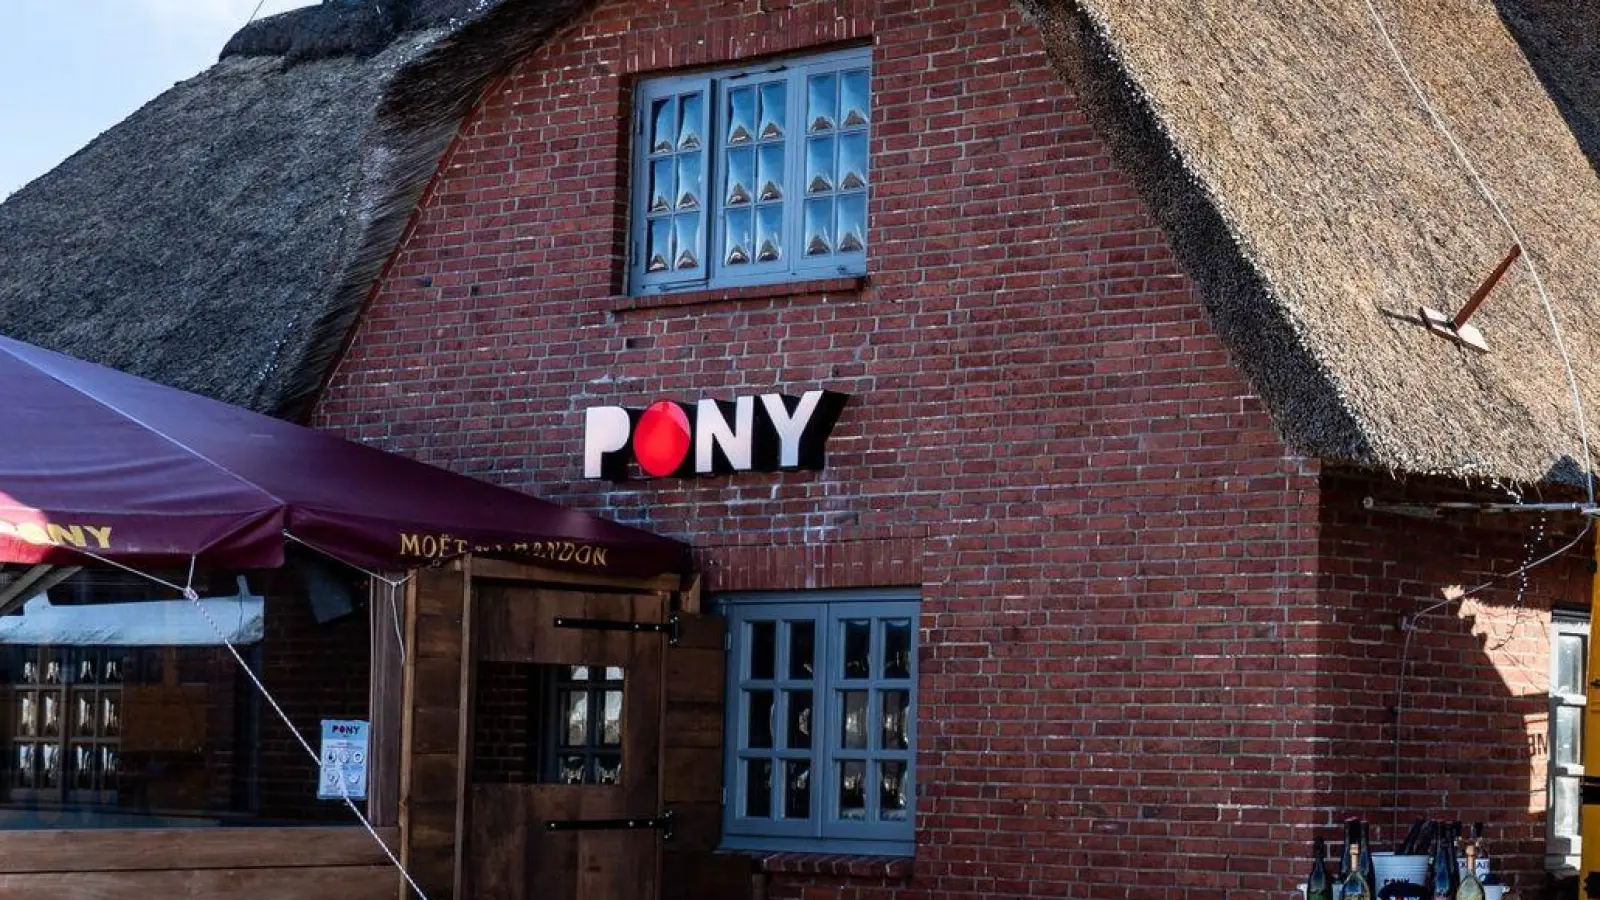 Der Betreiber der Gaststätte „Pony“ im Zentrum von Kampen distanziert sich von den Vorfällen. (Foto: Axel Heimken/dpa)